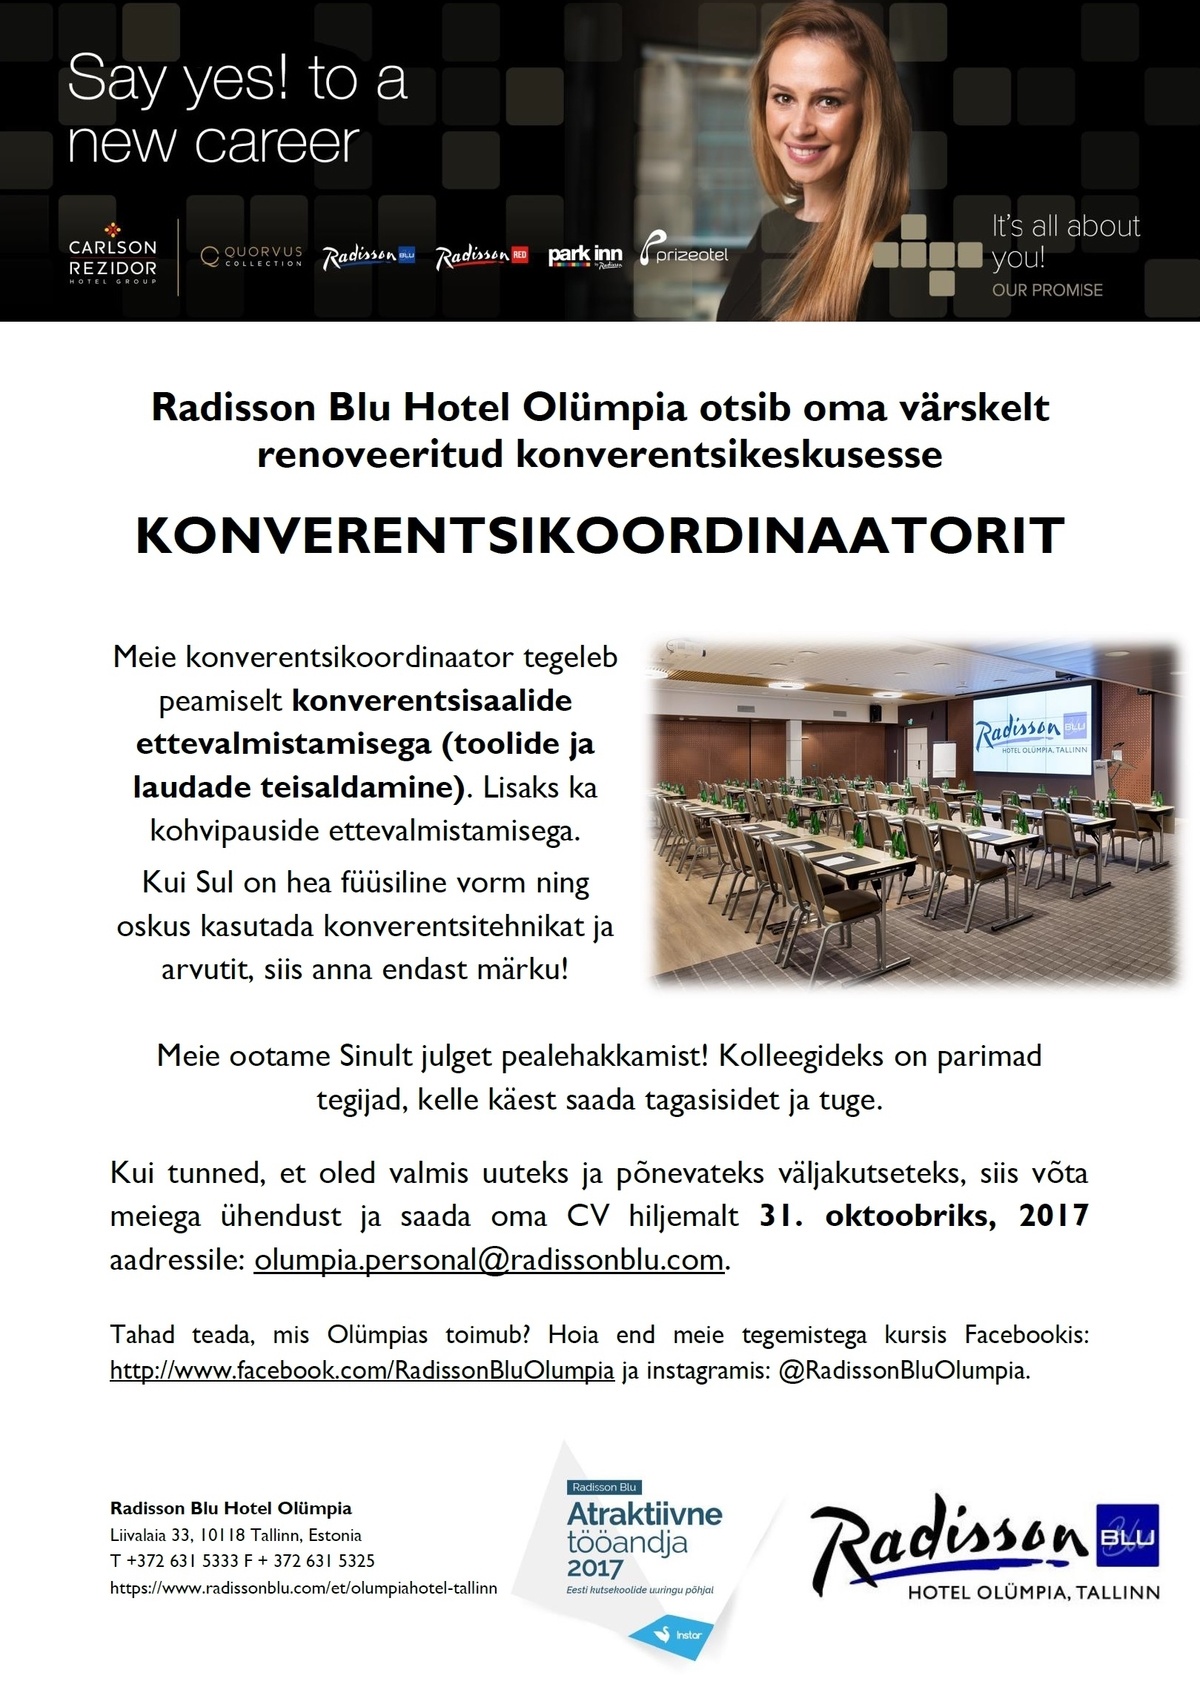 Radisson Blu Hotel Olümpia, Tallinn Konverentsikoordinaator